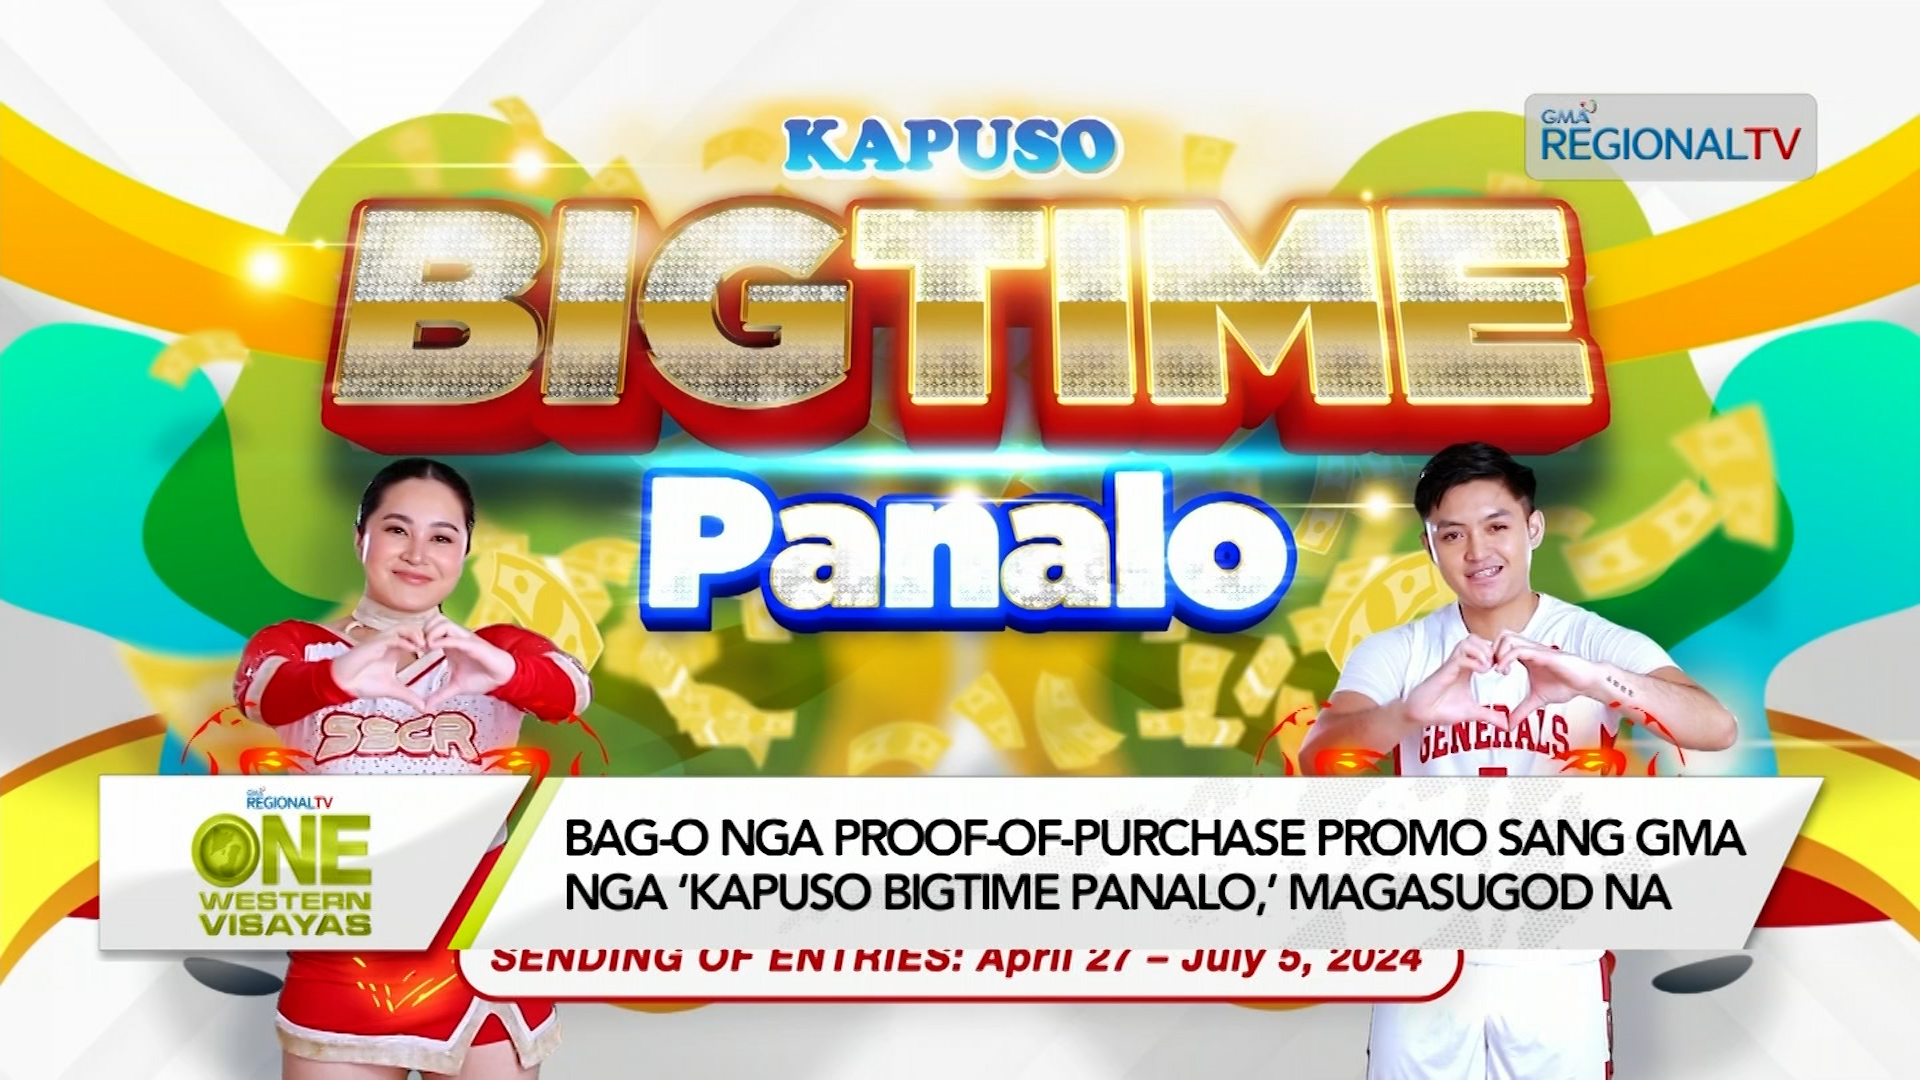 Bag-o nga proof-of-purchase promo sang GMA nga ‘Kapuso Bigtime Panalo,’